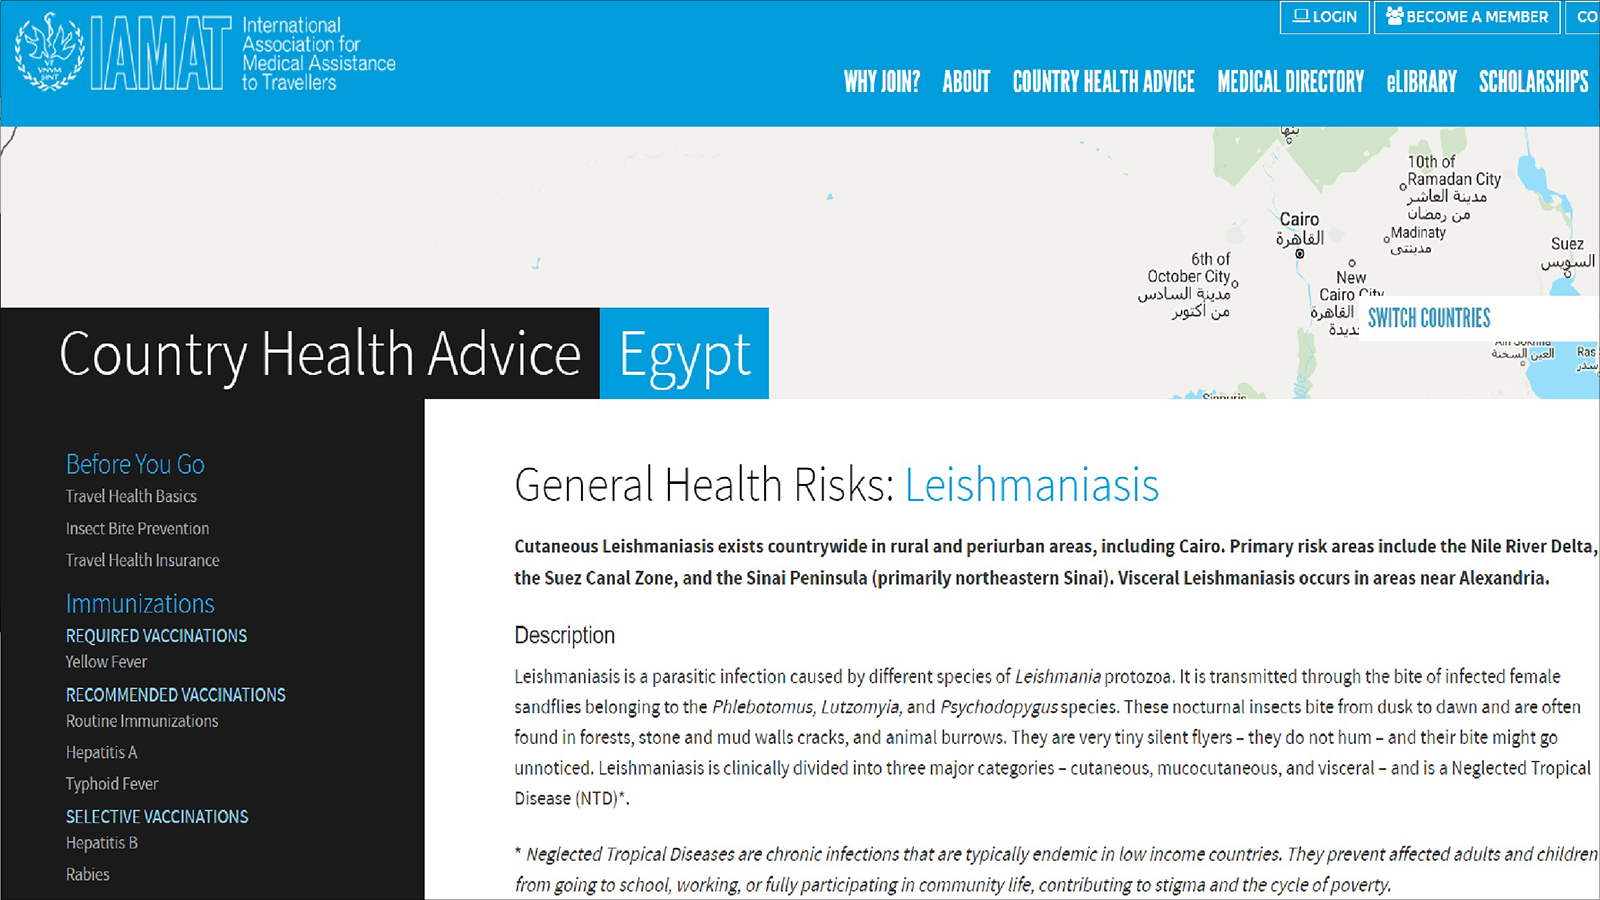 ‪الرابطة الدولية لمساعدة المسافرين طبيا تحذر من السفر لمصر لوجود مرض الليشمانيا بها‬ (نشطاء)